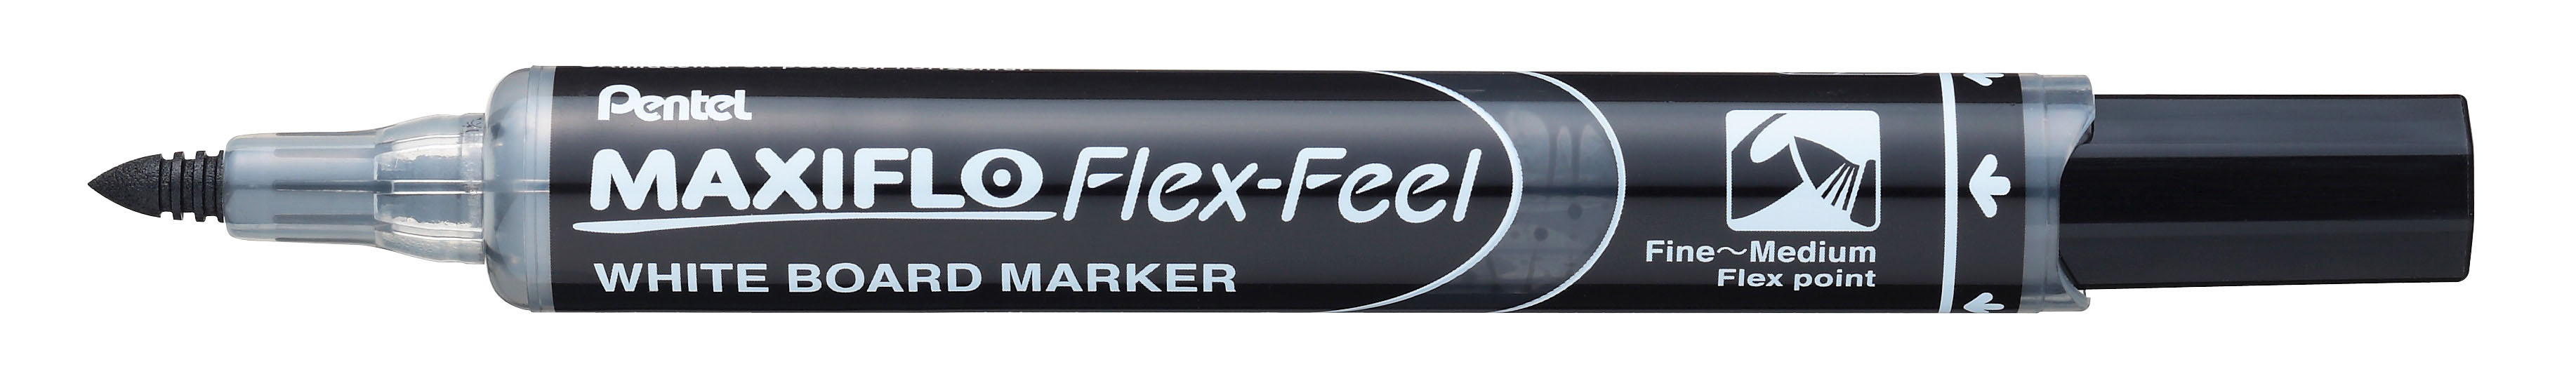 Whiteboardmarker Maxiflo Flex-Feel